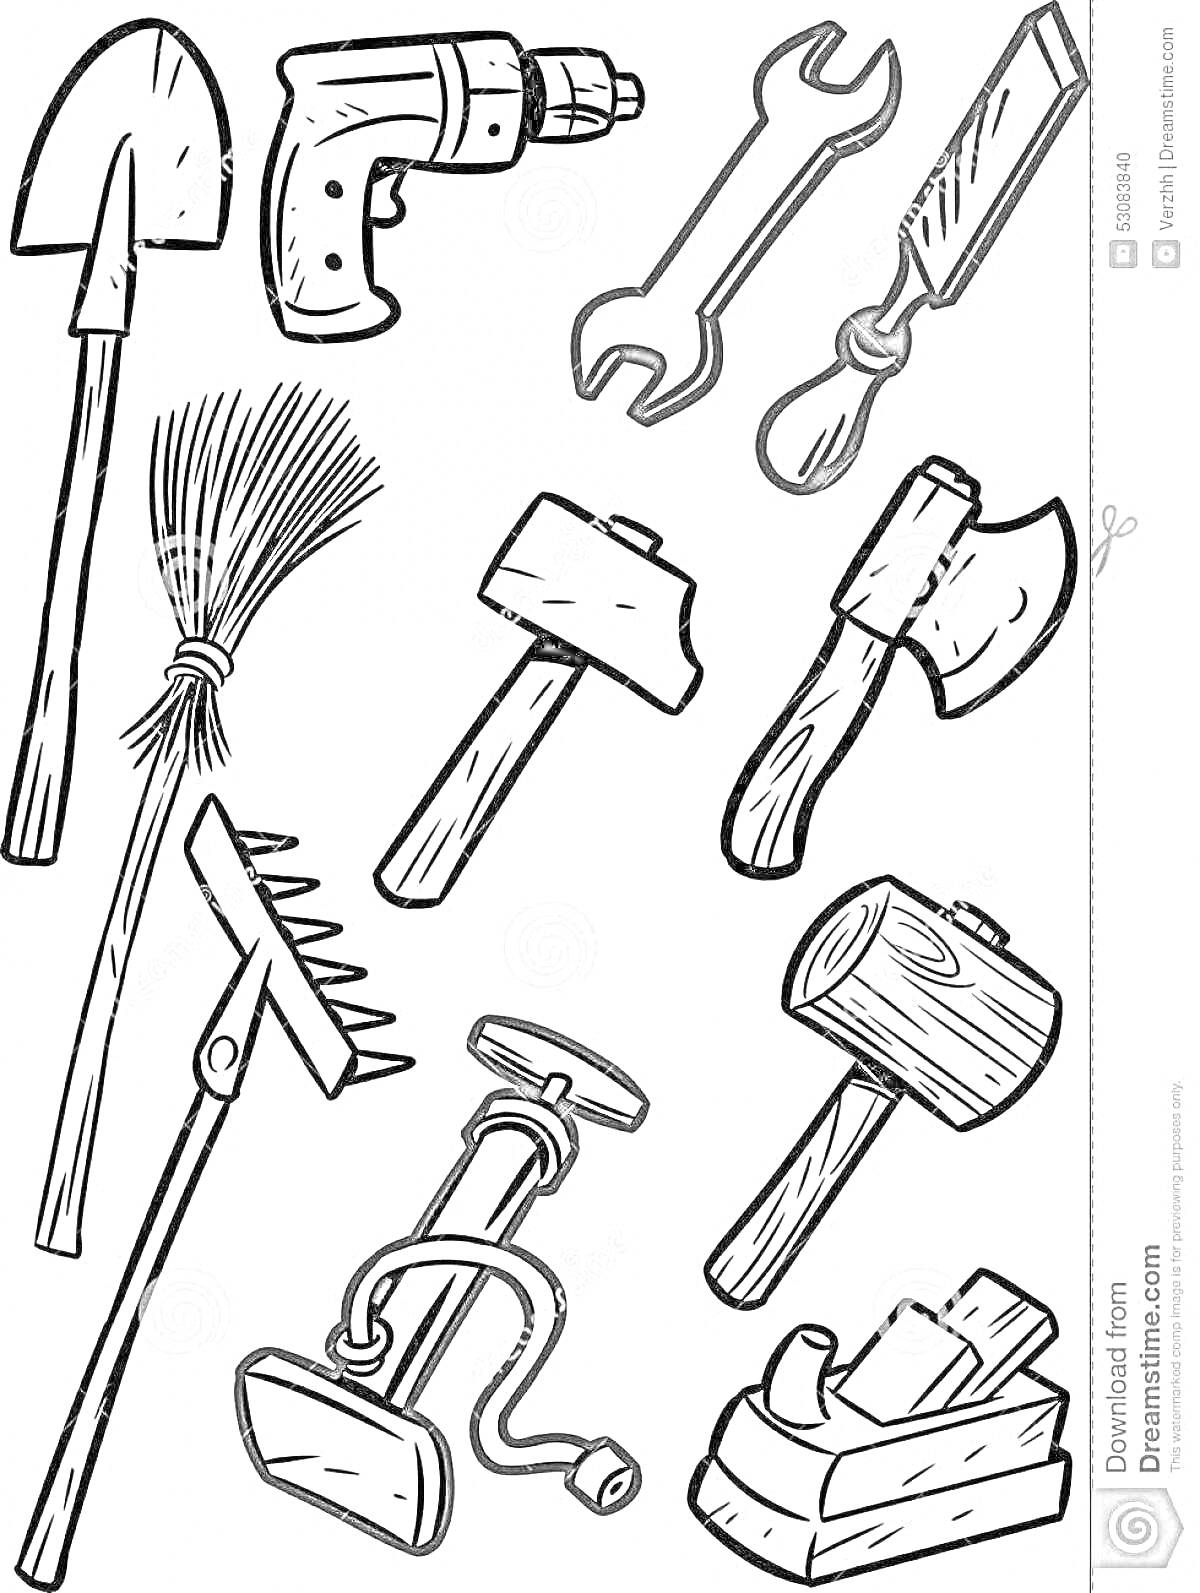 Набор инструментов: лопата, дрель, гаечный ключ, стамеска, веник, молоток, топор, грабли, насос, деревянный молоток, рубанок